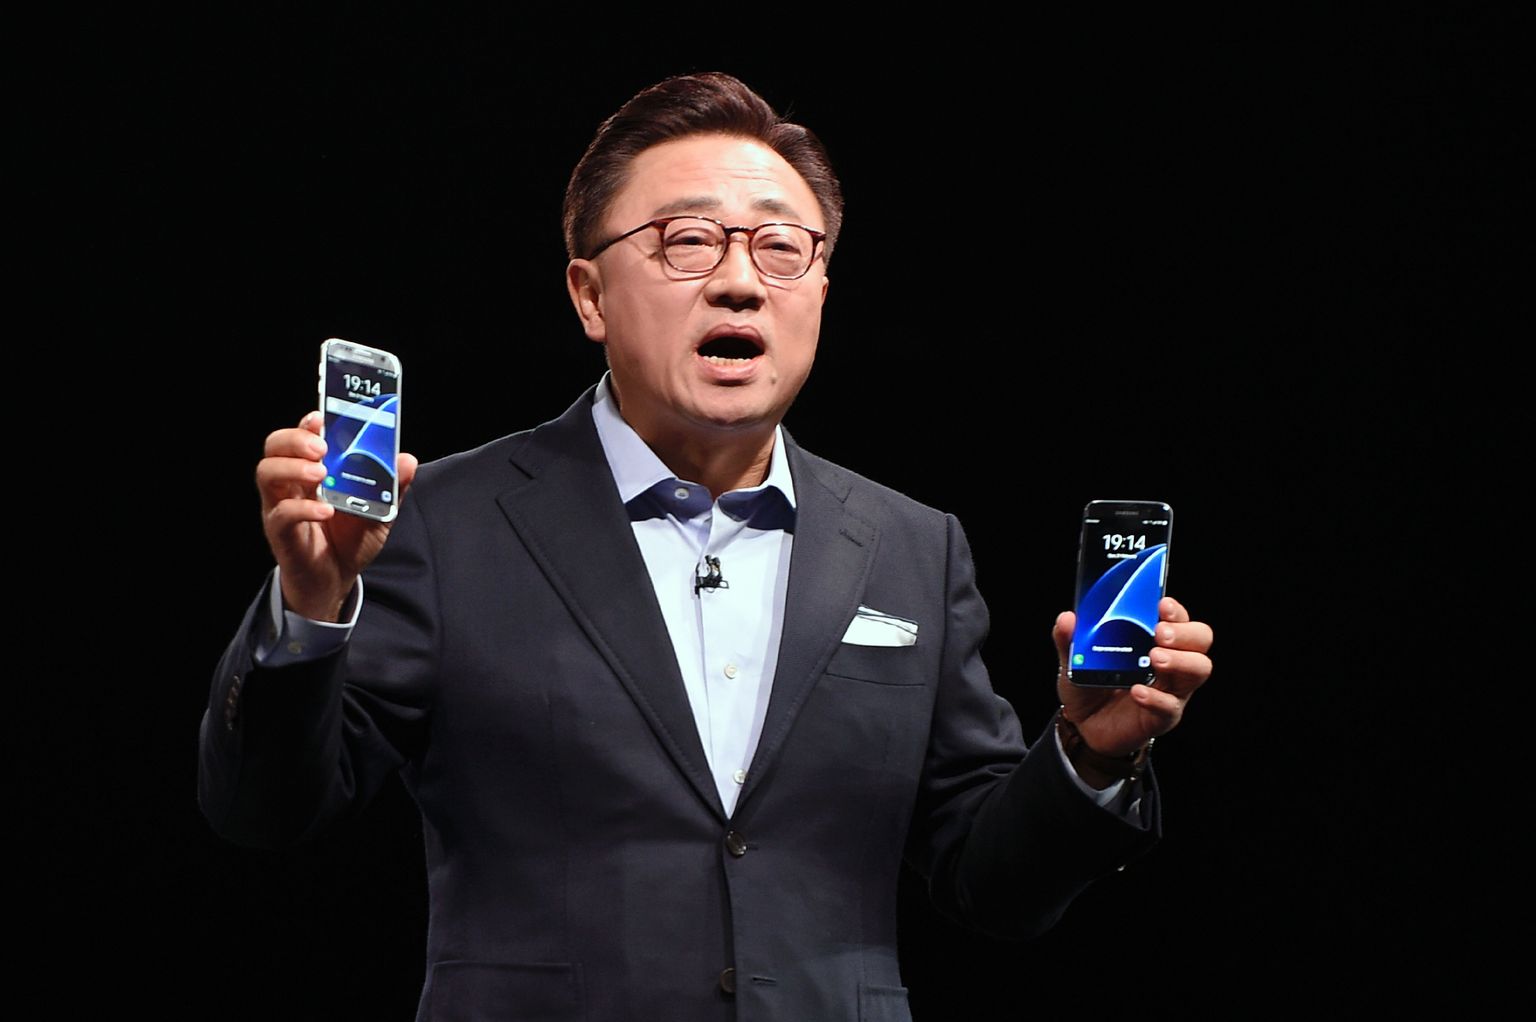 Samsungi mobiiliäri juht DJ Koh